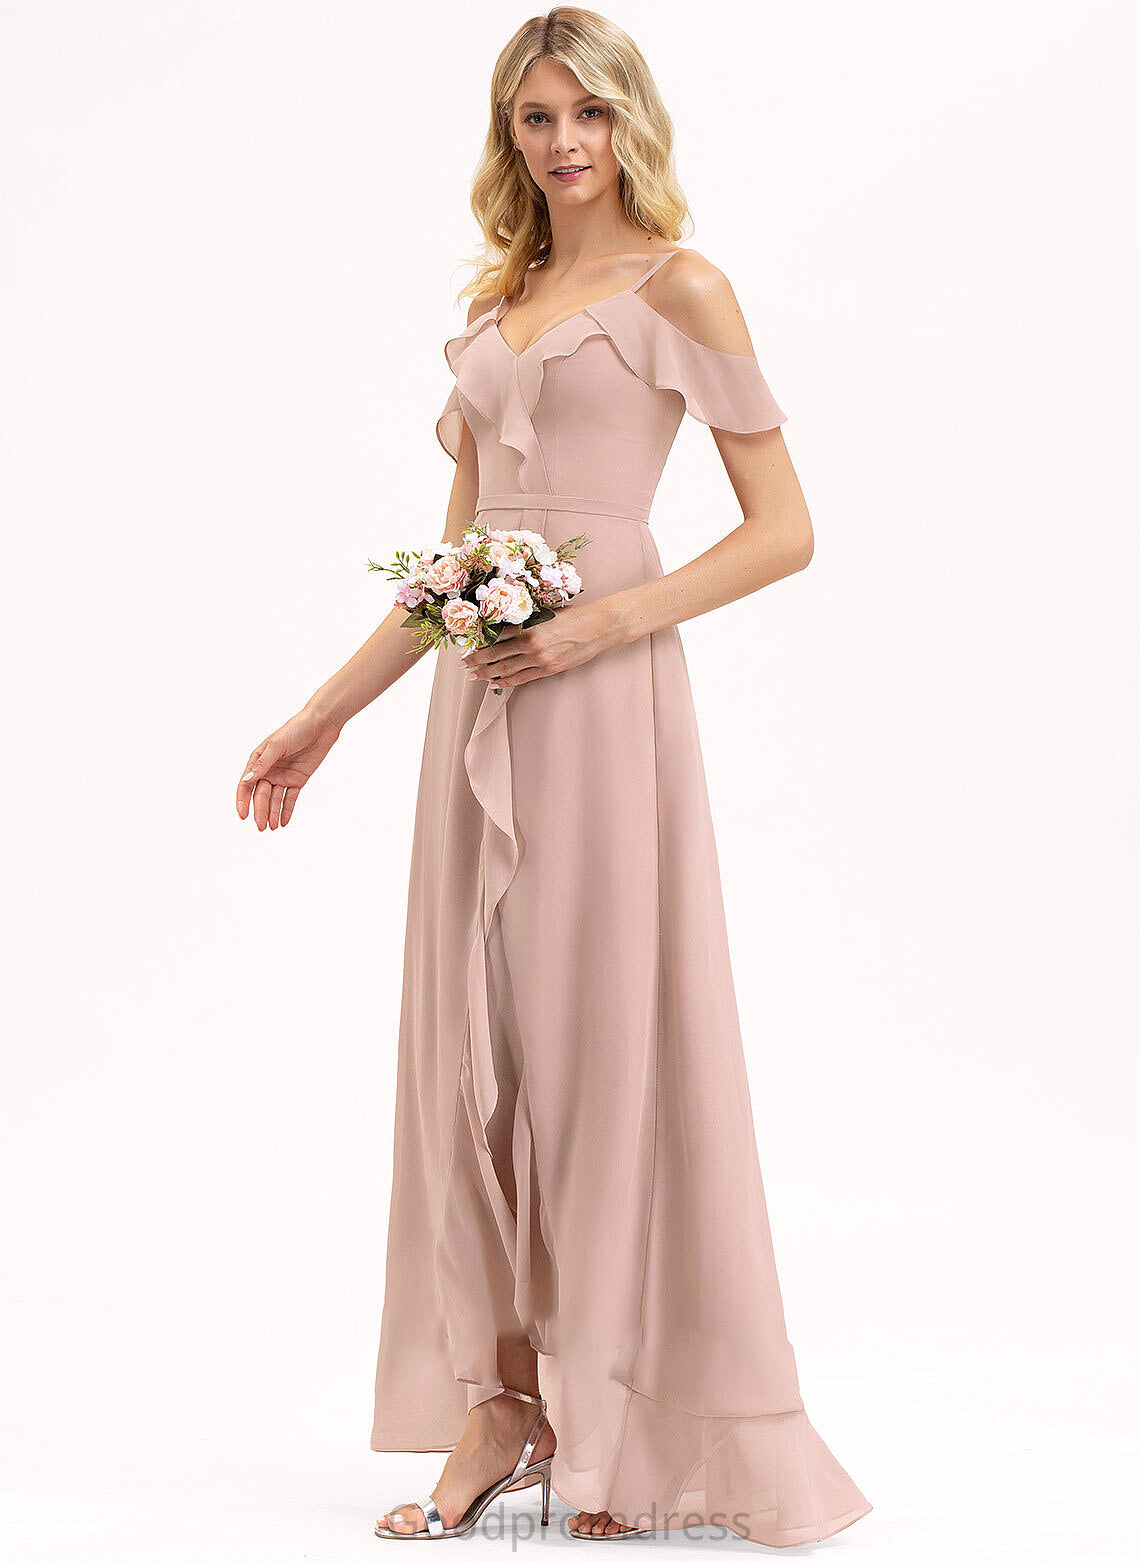 Neckline Silhouette Fabric A-Line V-neck Asymmetrical Length CascadingRuffles Embellishment Millicent Natural Waist V-Neck Bridesmaid Dresses